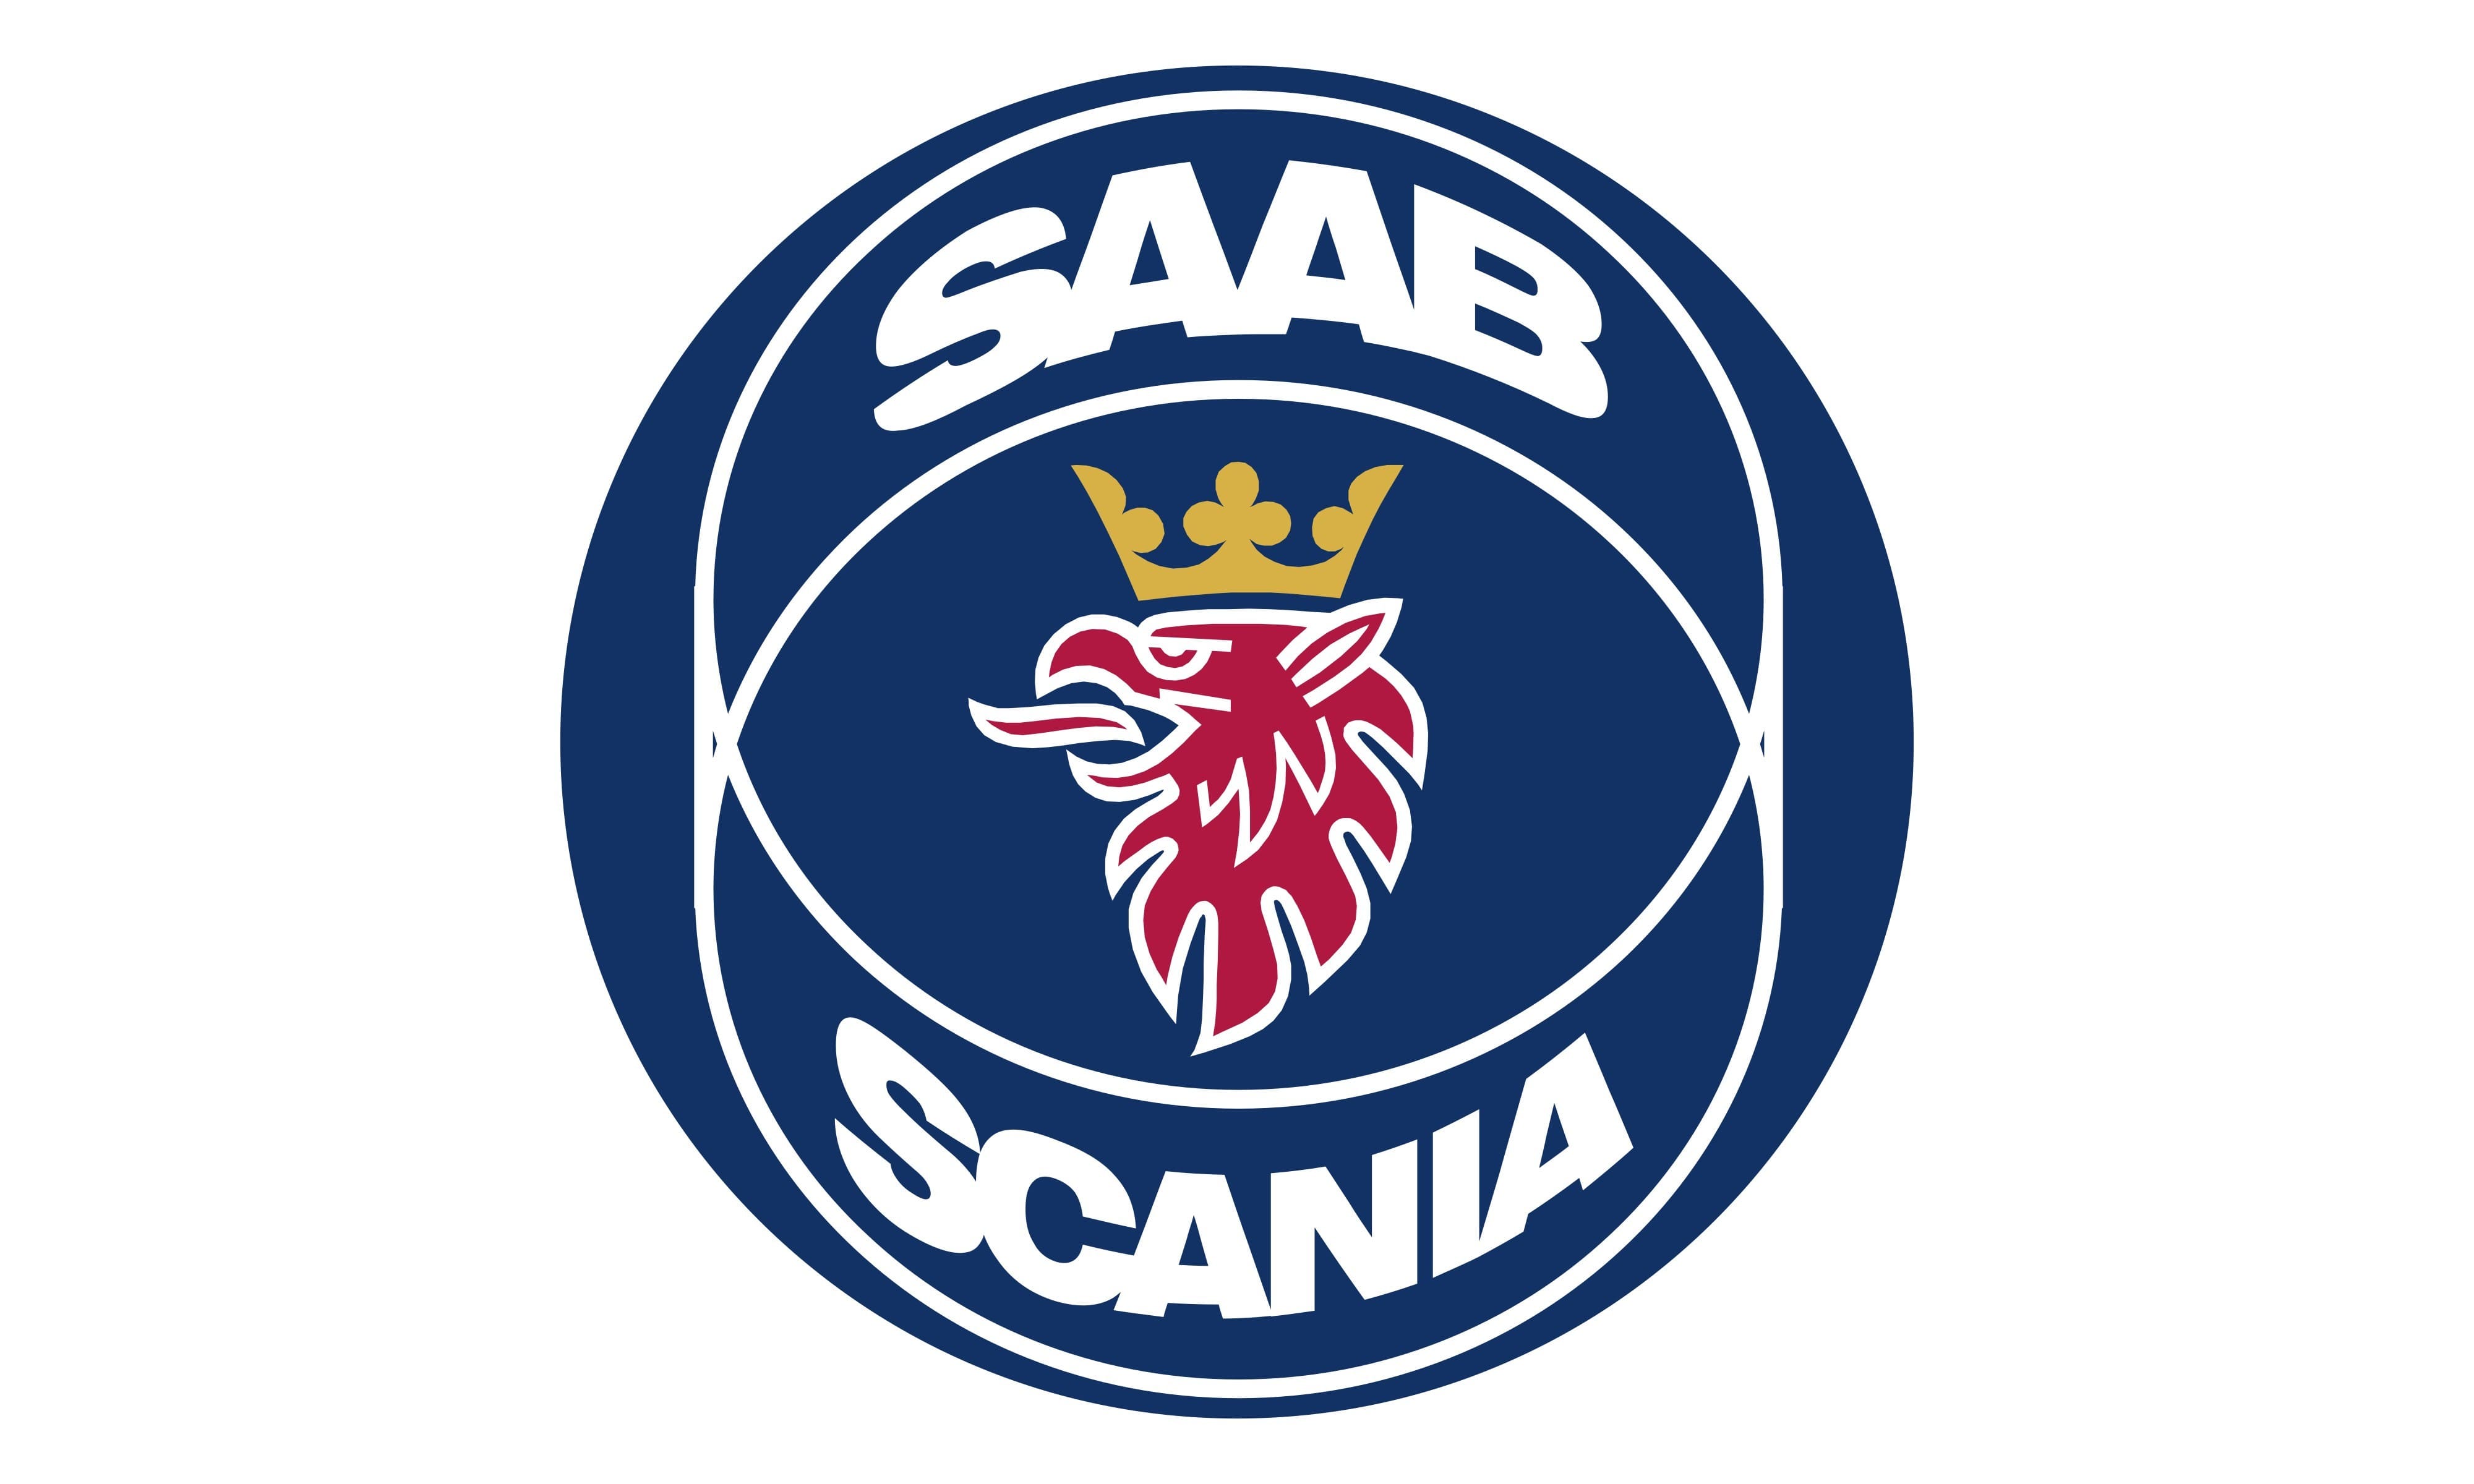 scania logo